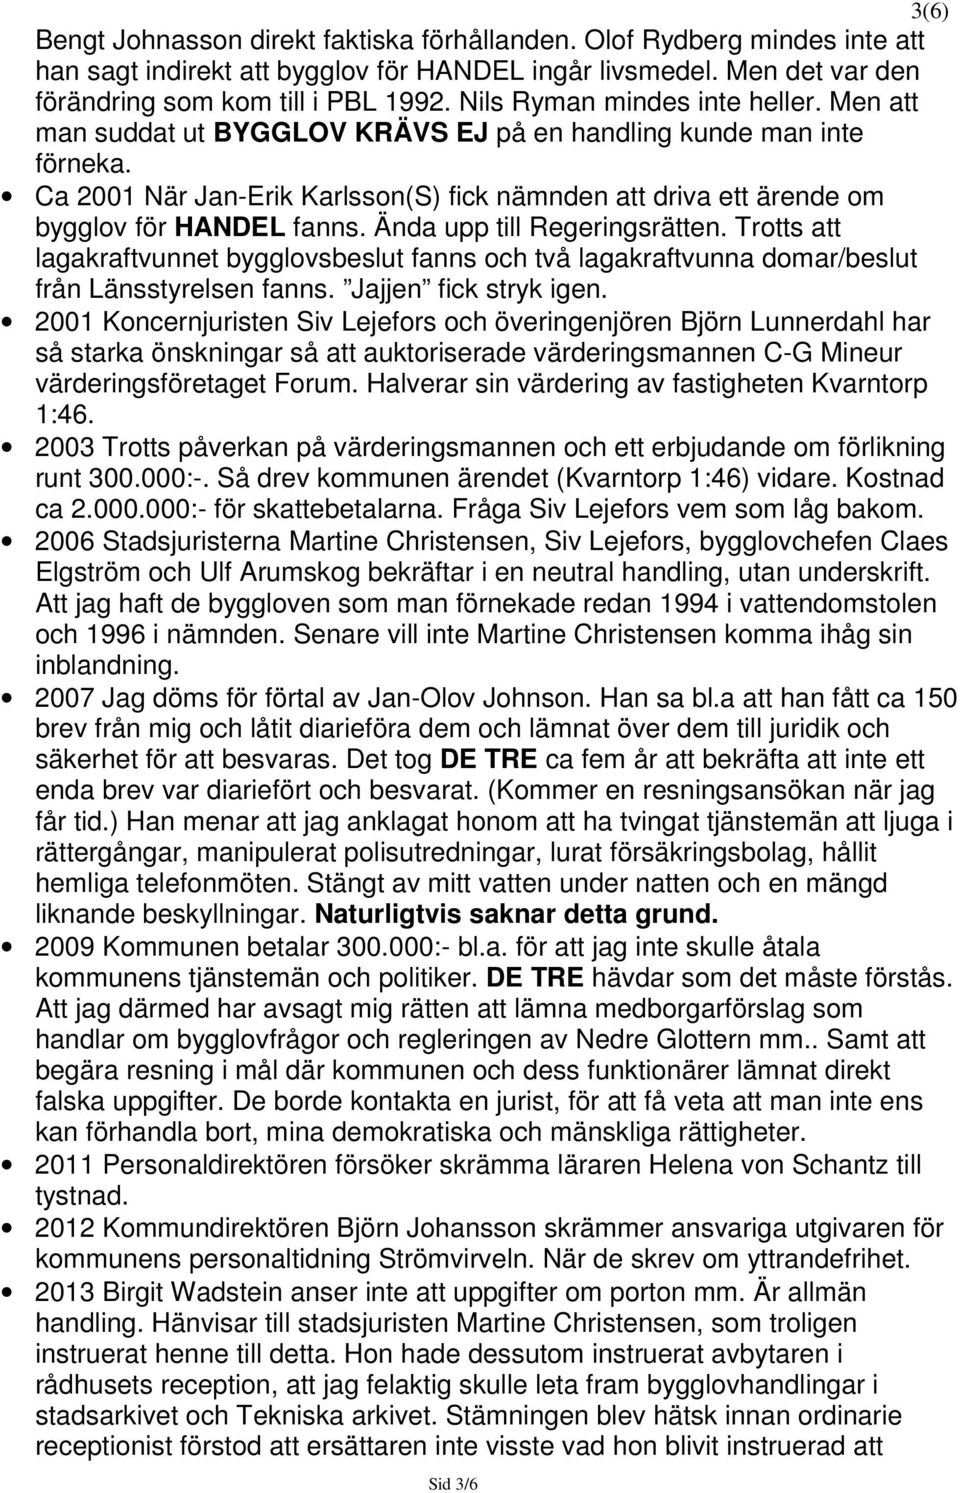 Ca 2001 När Jan-Erik Karlsson(S) fick nämnden att driva ett ärende om bygglov för HANDEL fanns. Ända upp till Regeringsrätten.